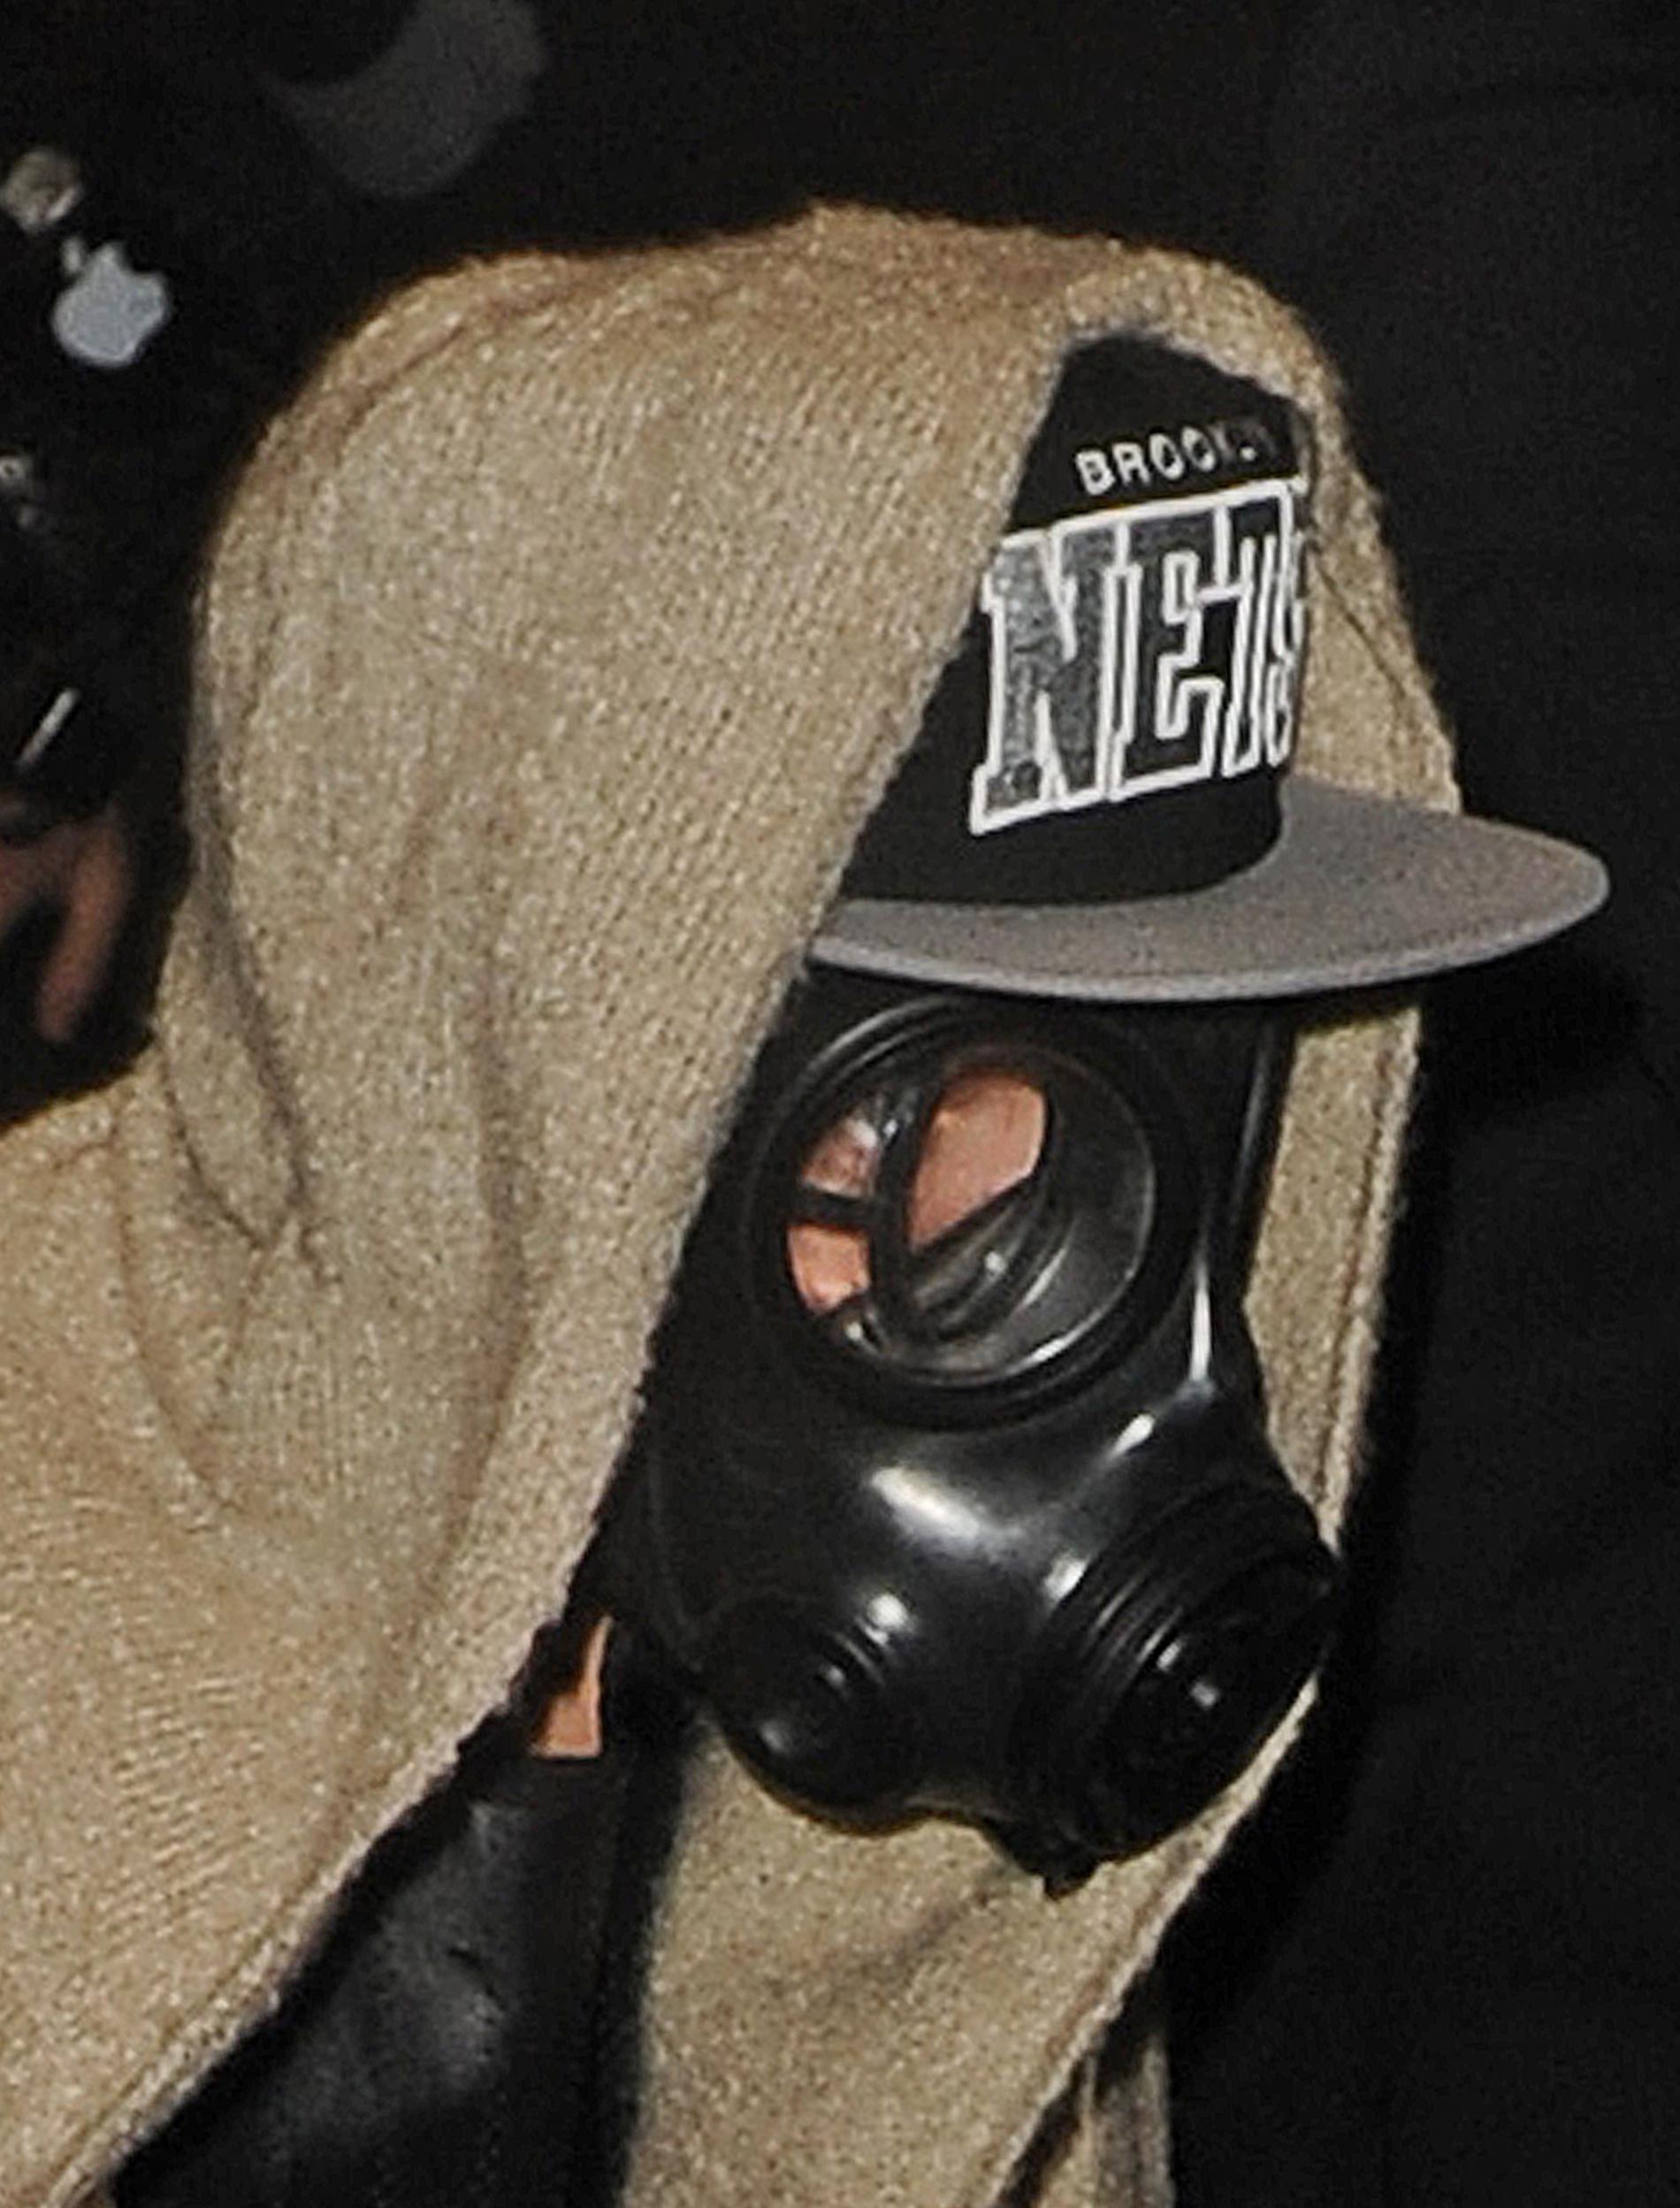 Justin Bieber i gasmask Förvirringen var total när superstjärnan Bieber smög runt i London med gasmask